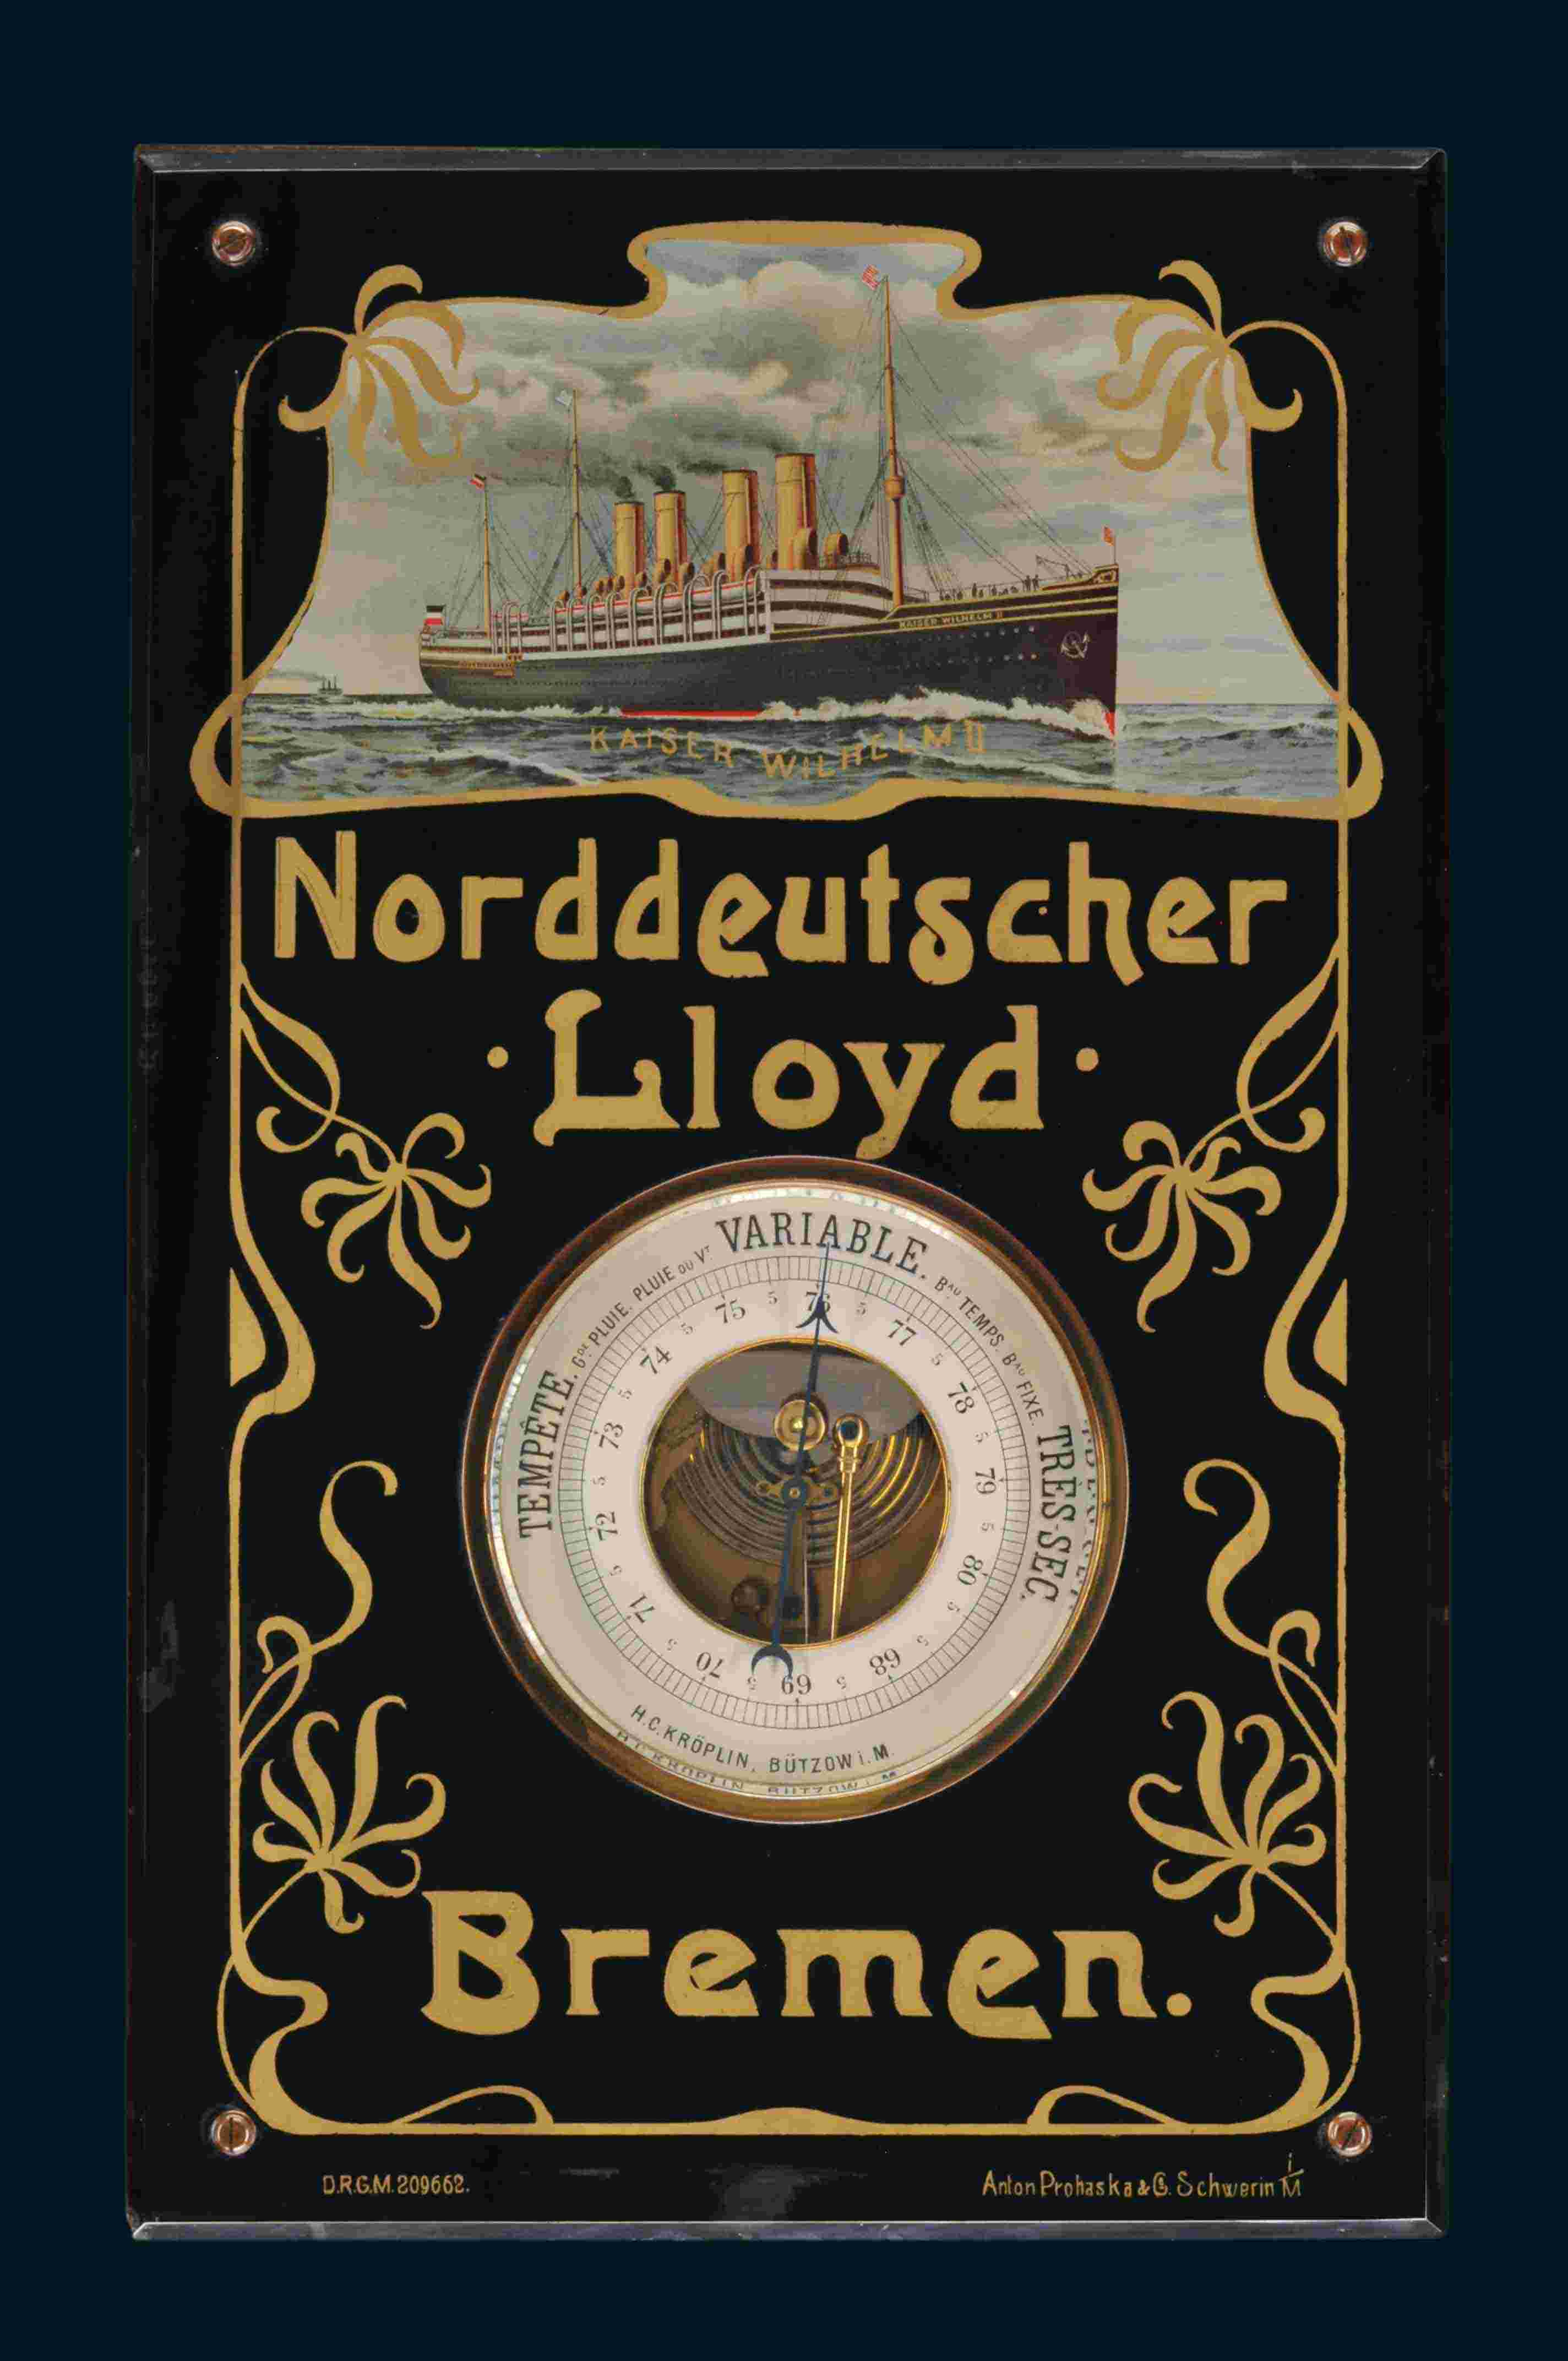 Norddeutscher Lloyd "Kaiser Wilhelm II" 